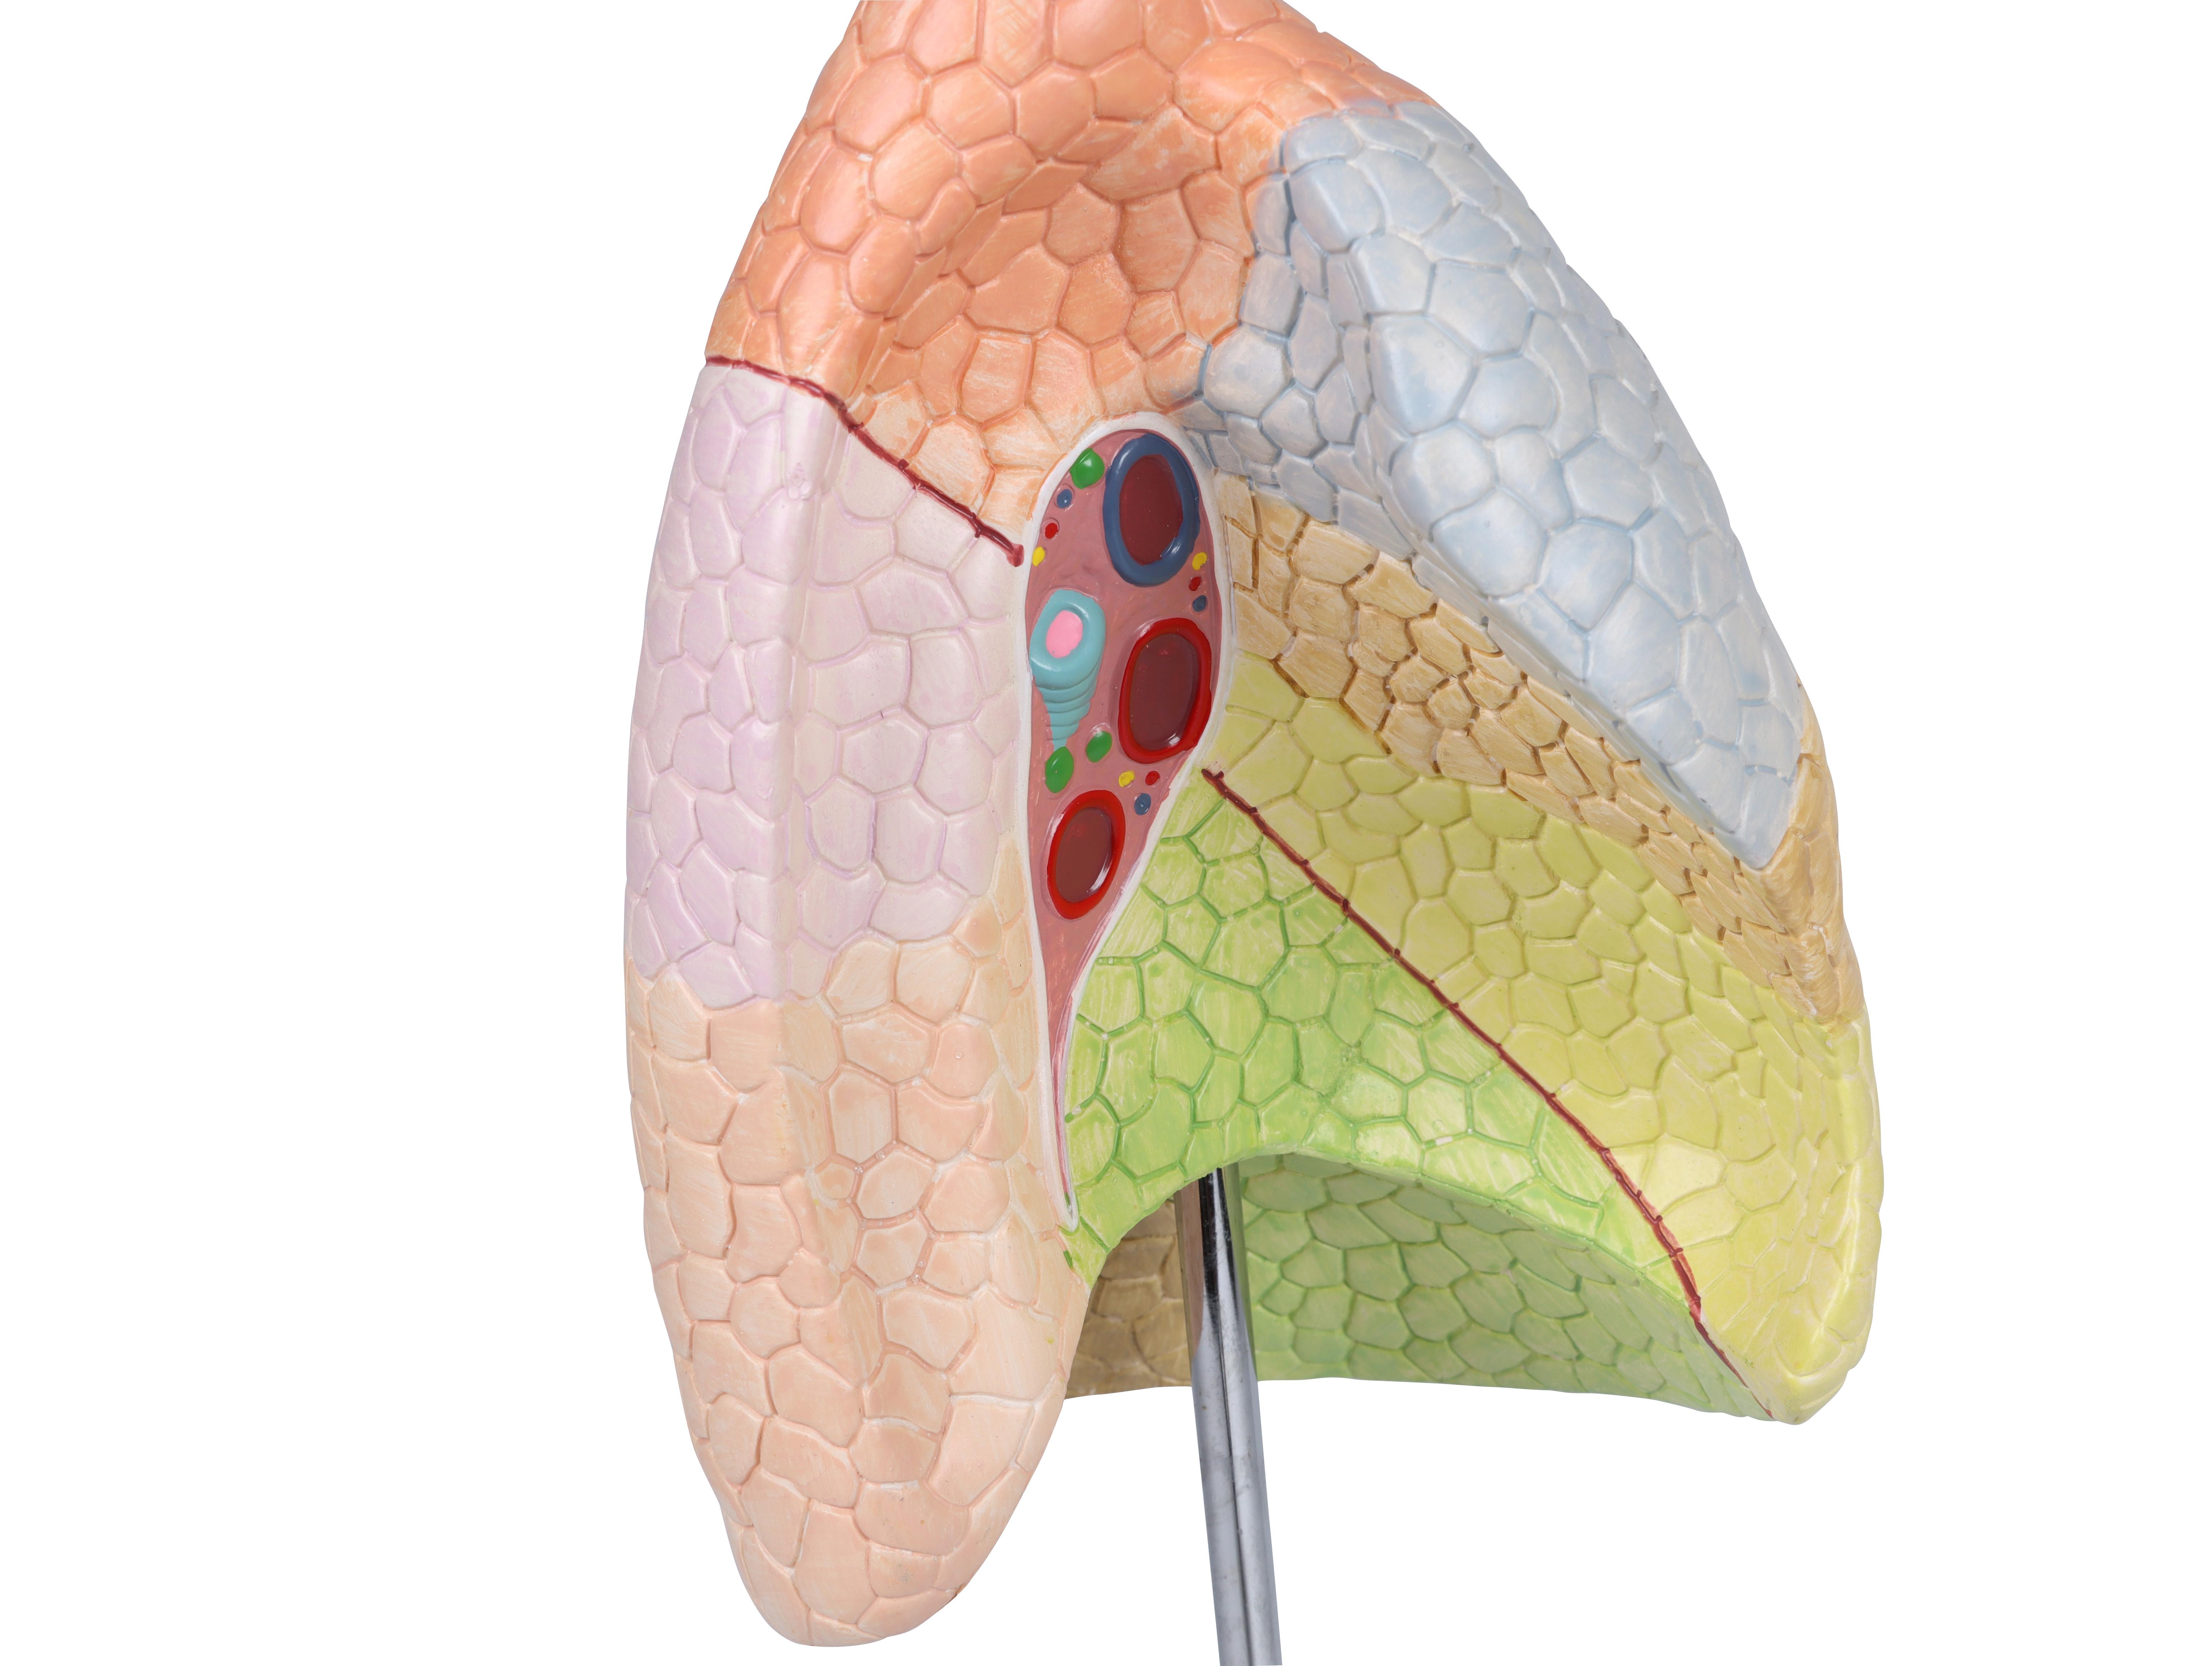 Didaktisches-Lungenmodell-lebensgroß-2-teilig-3